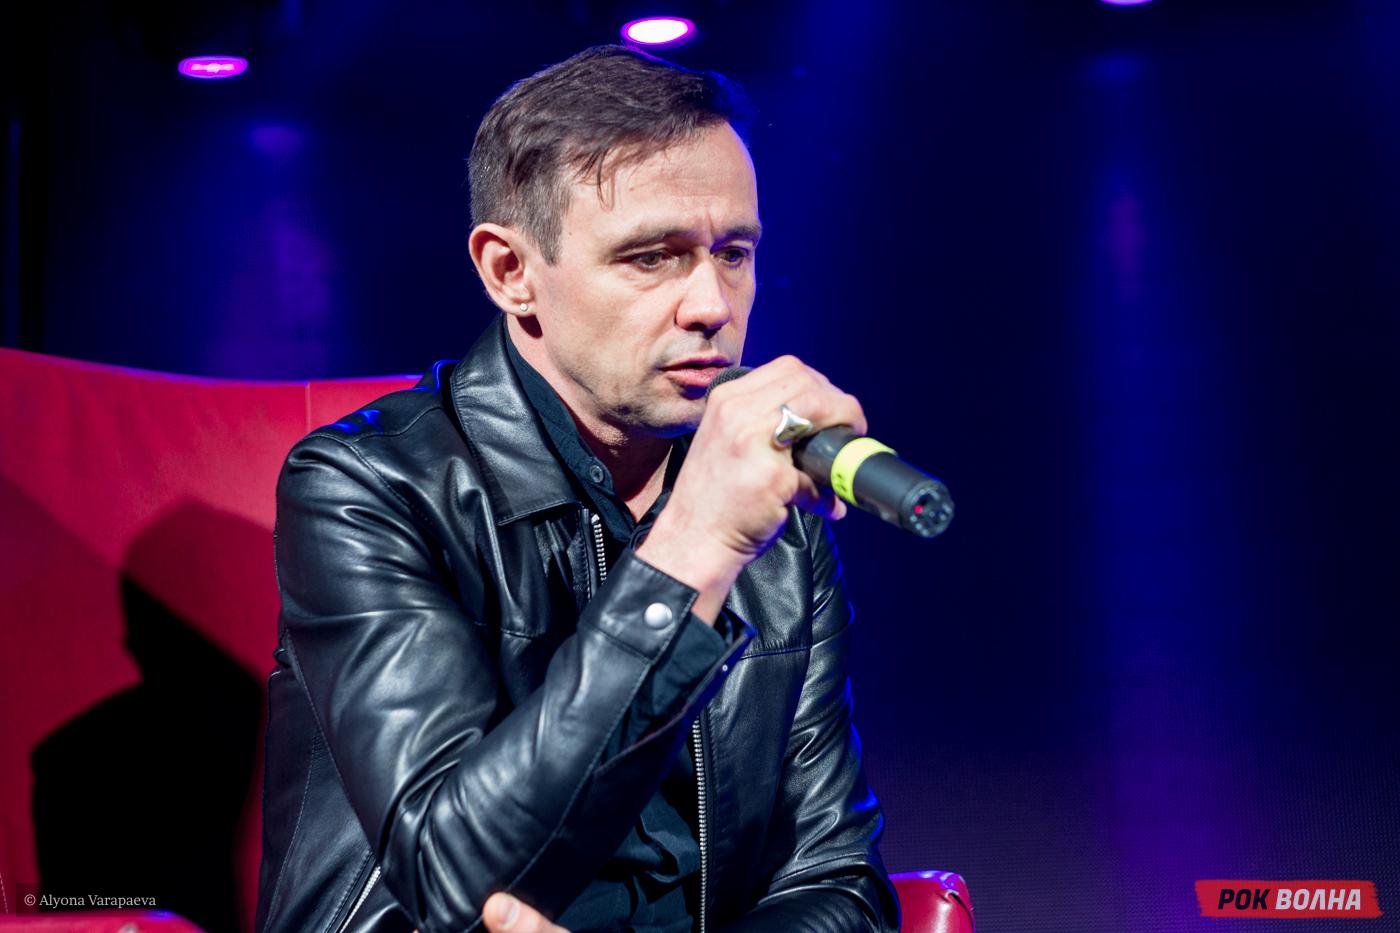 "КРАЙ": Public Talk и DJ Set Дельфина в Москве по случаю выхода нового альбома